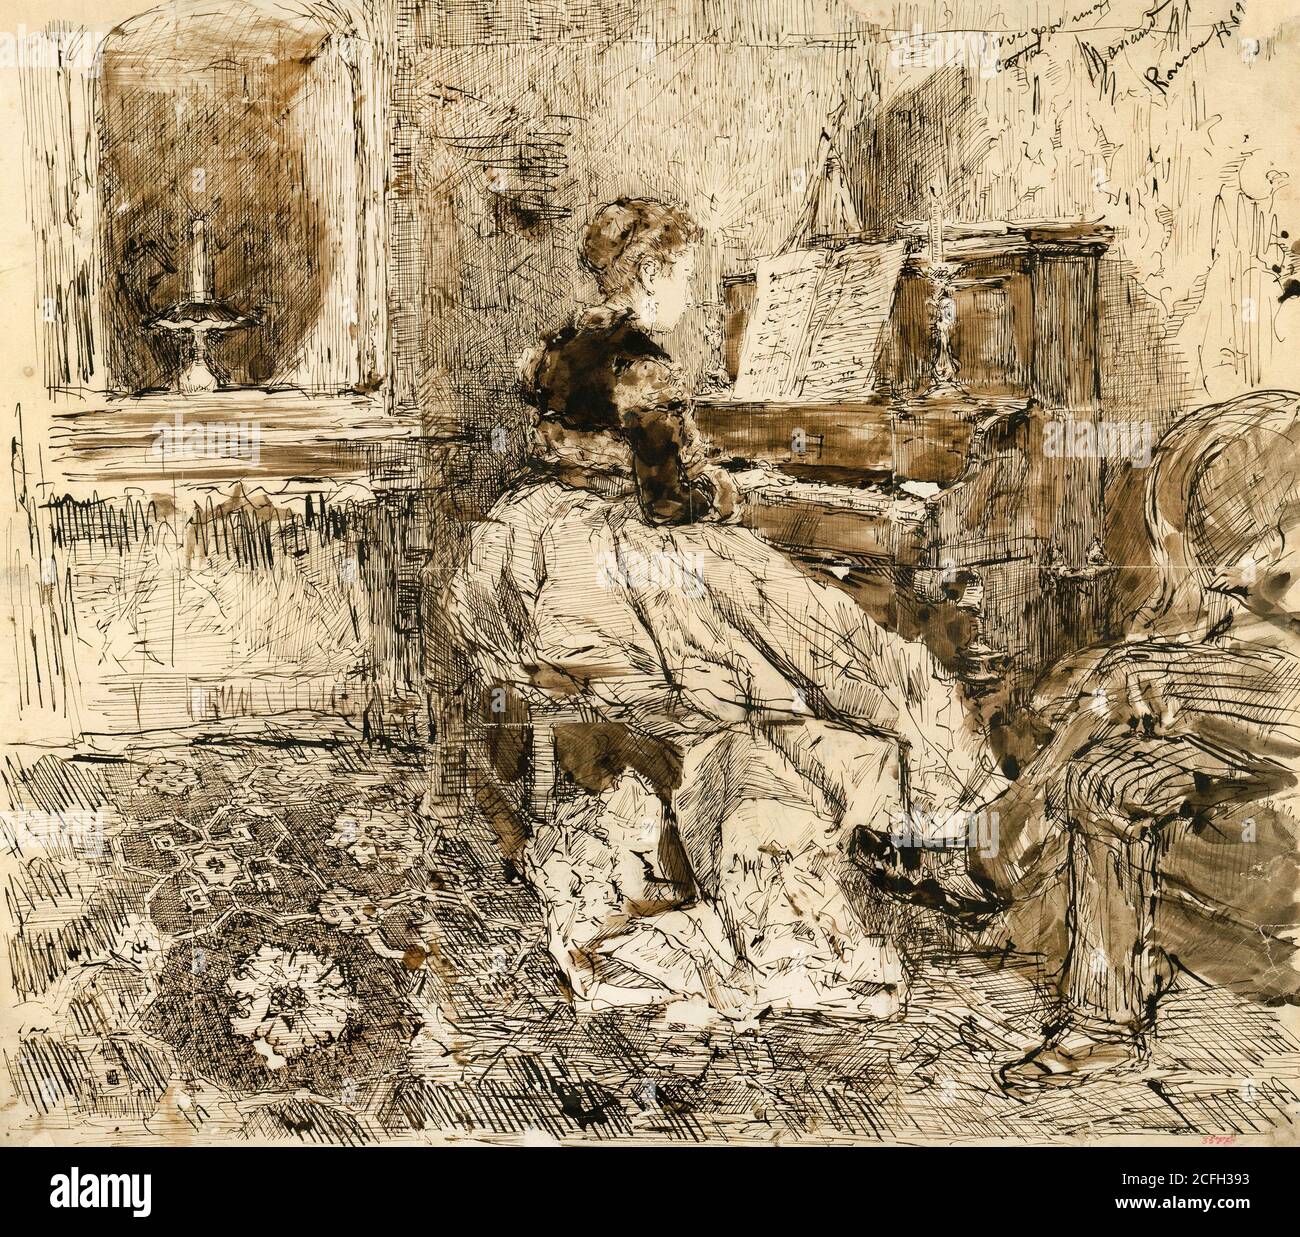 Maria Fortuny, Cecilia de Madrazo spielt Klavier 1869 Stift und Tinte und Tinte auf Papier, Museu Nacional d'Art de Catalunya, Barcelona, Spanien. Stockfoto